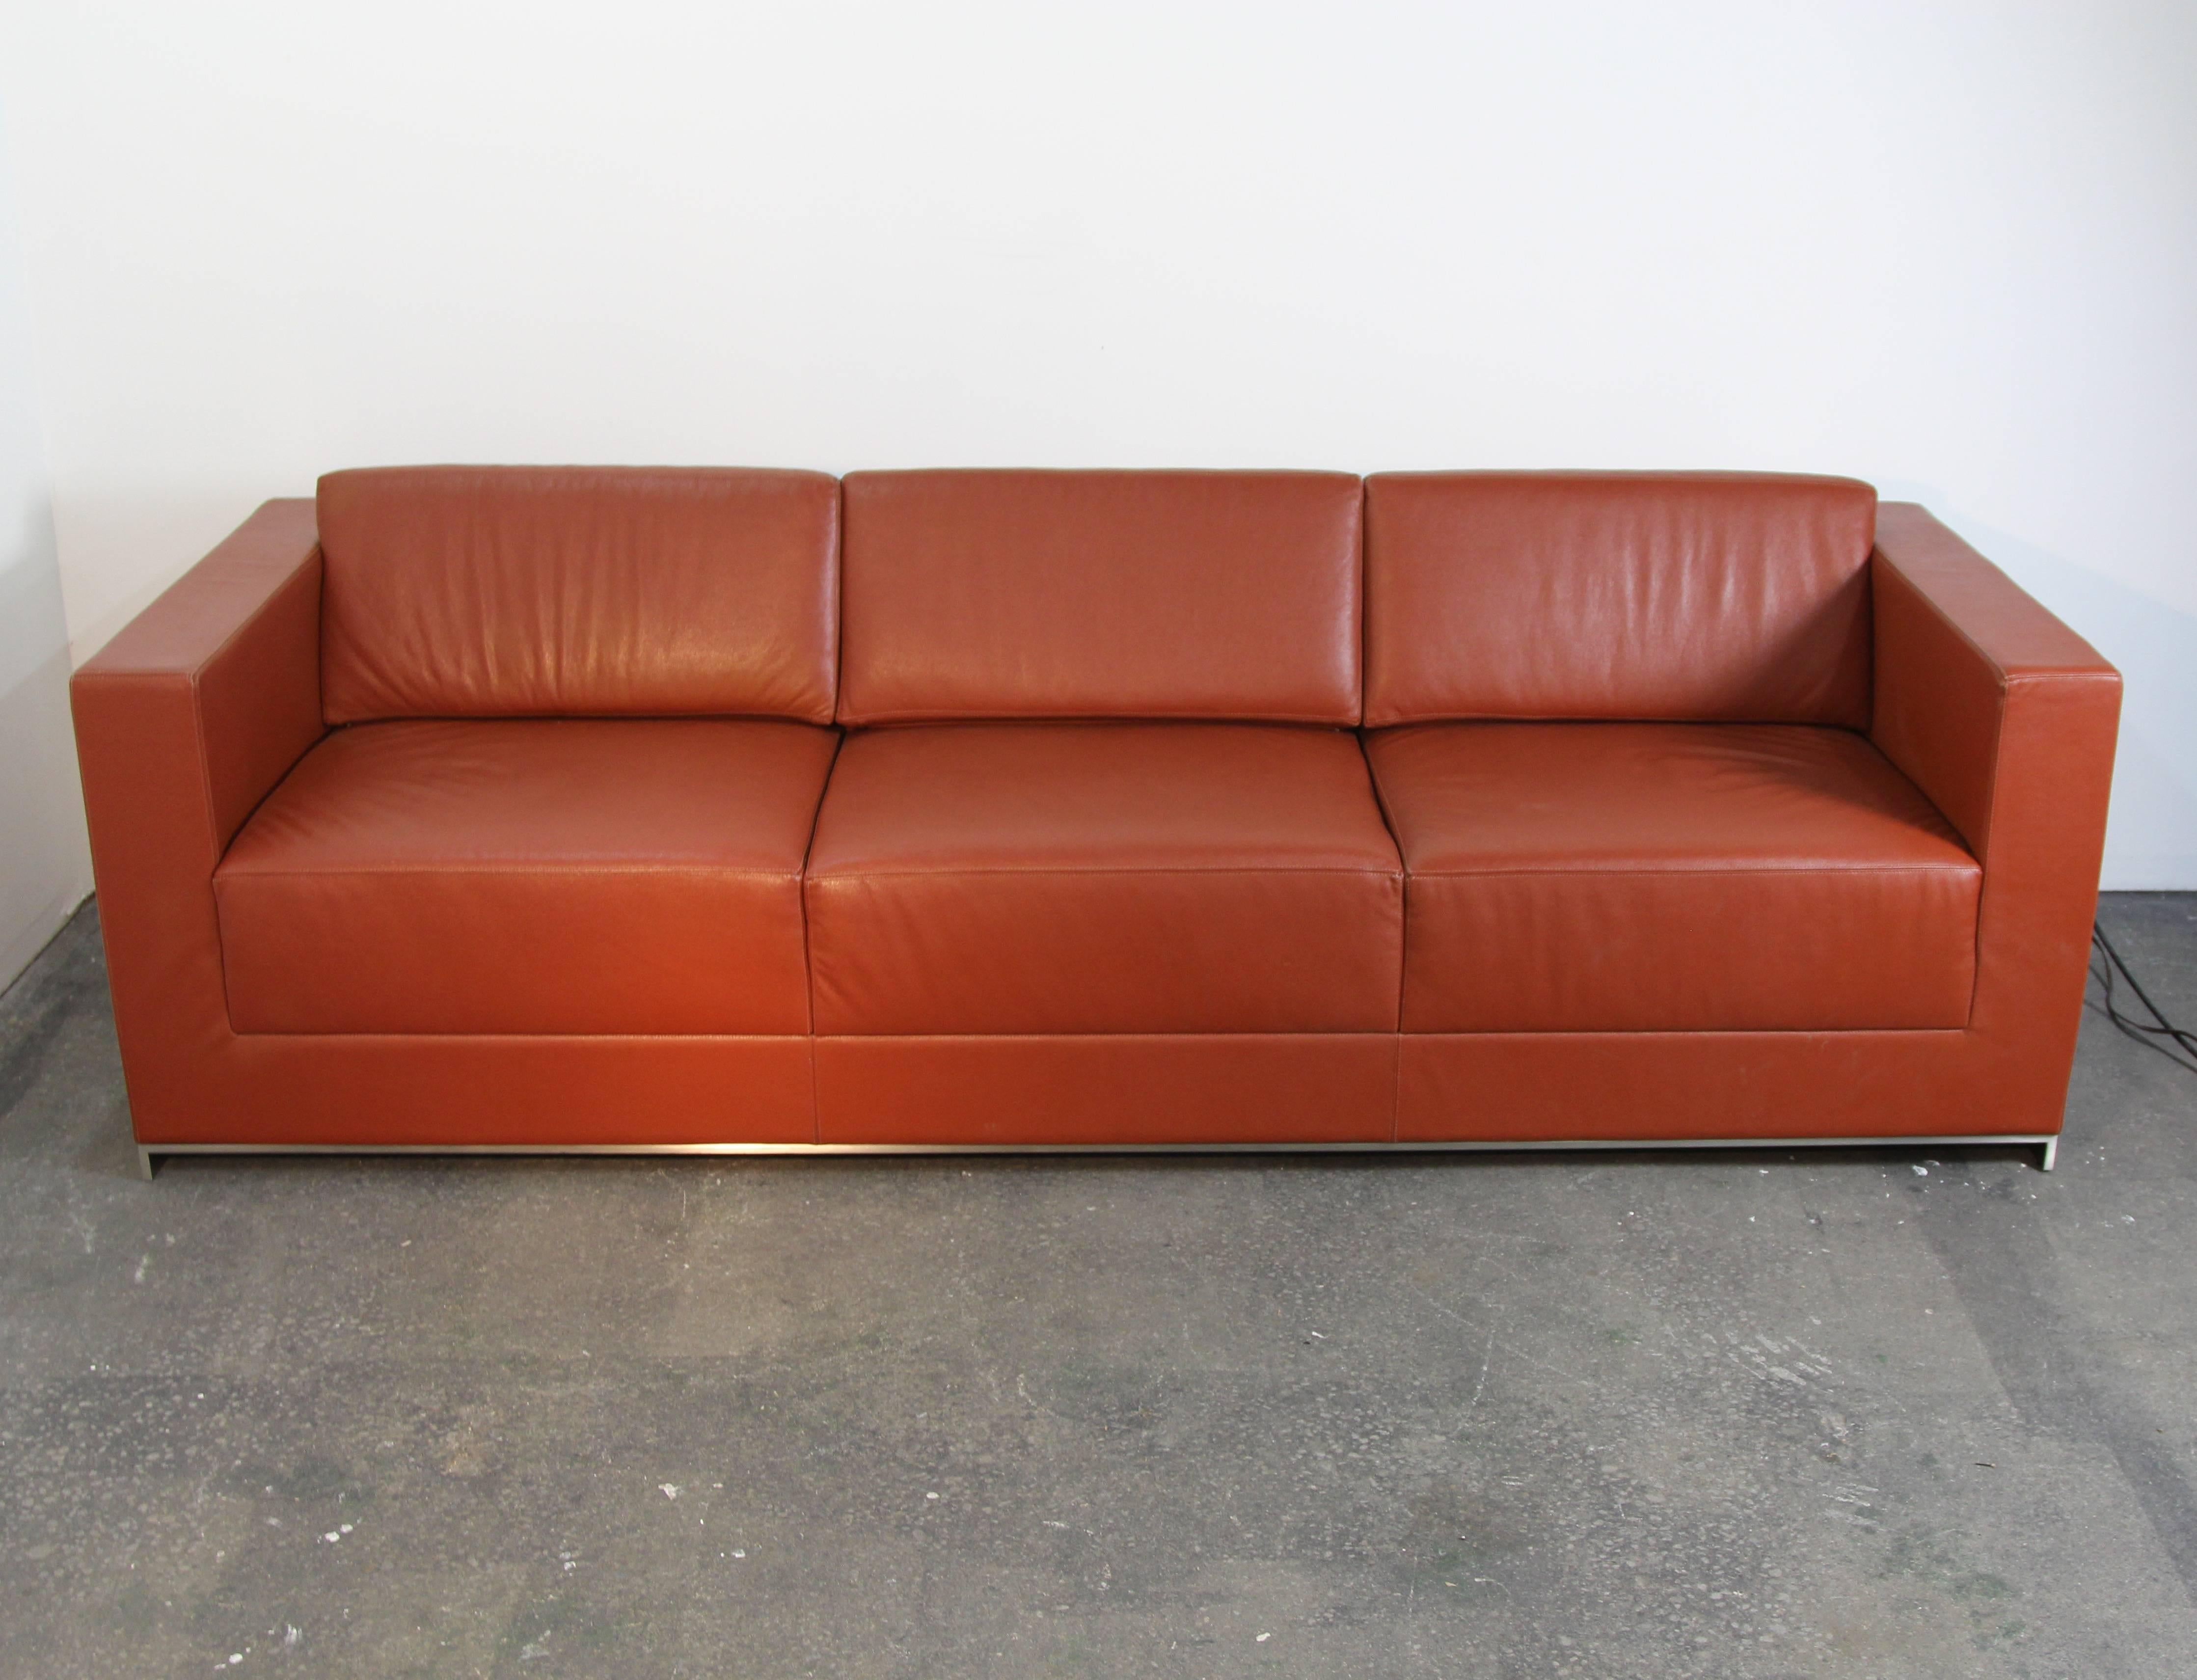 saddle color leather sofa